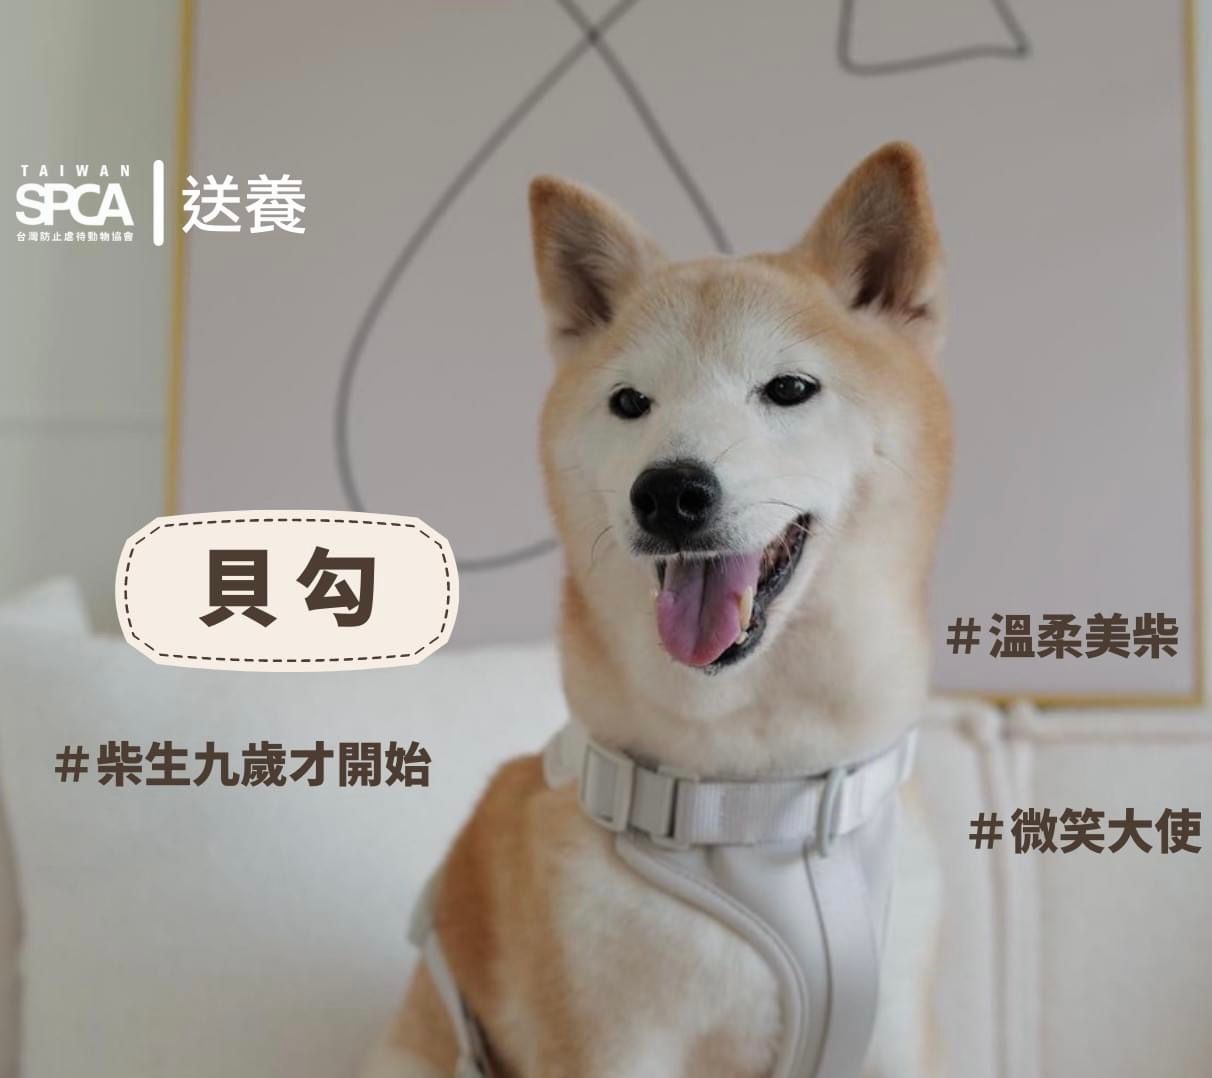 【送養│溫柔柴柴找家中】Adoption Needed: Gentle Shiba Inu Looking for a Home　(English Below）